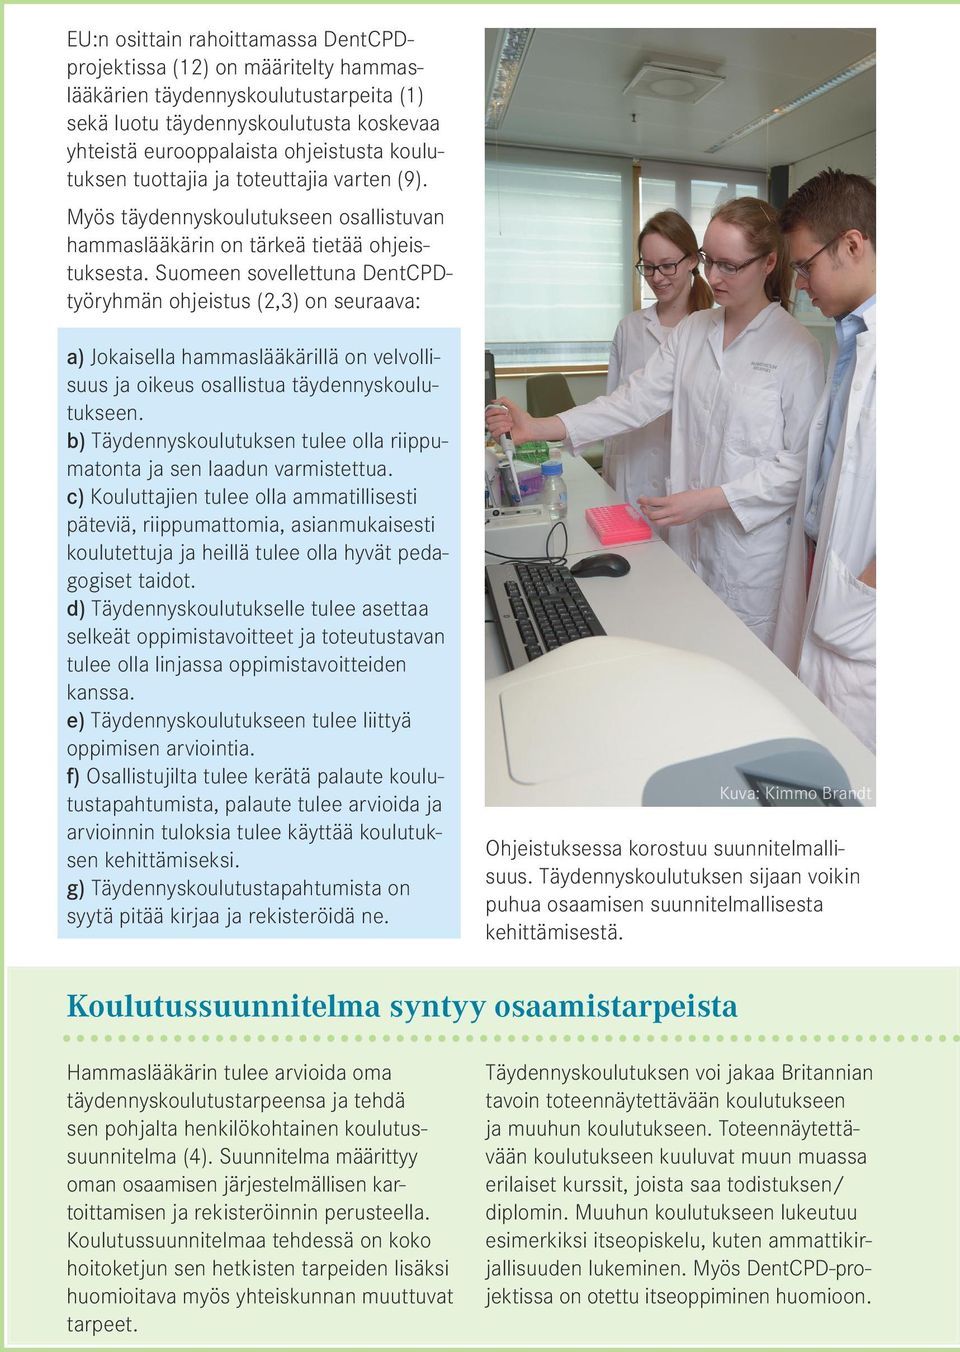 Suomeen sovellettuna DentCPDtyöryhmän ohjeistus (2,3) on seuraava: a) Jokaisella hammaslääkärillä on velvollisuus ja oikeus osallistua täydennyskoulutukseen.